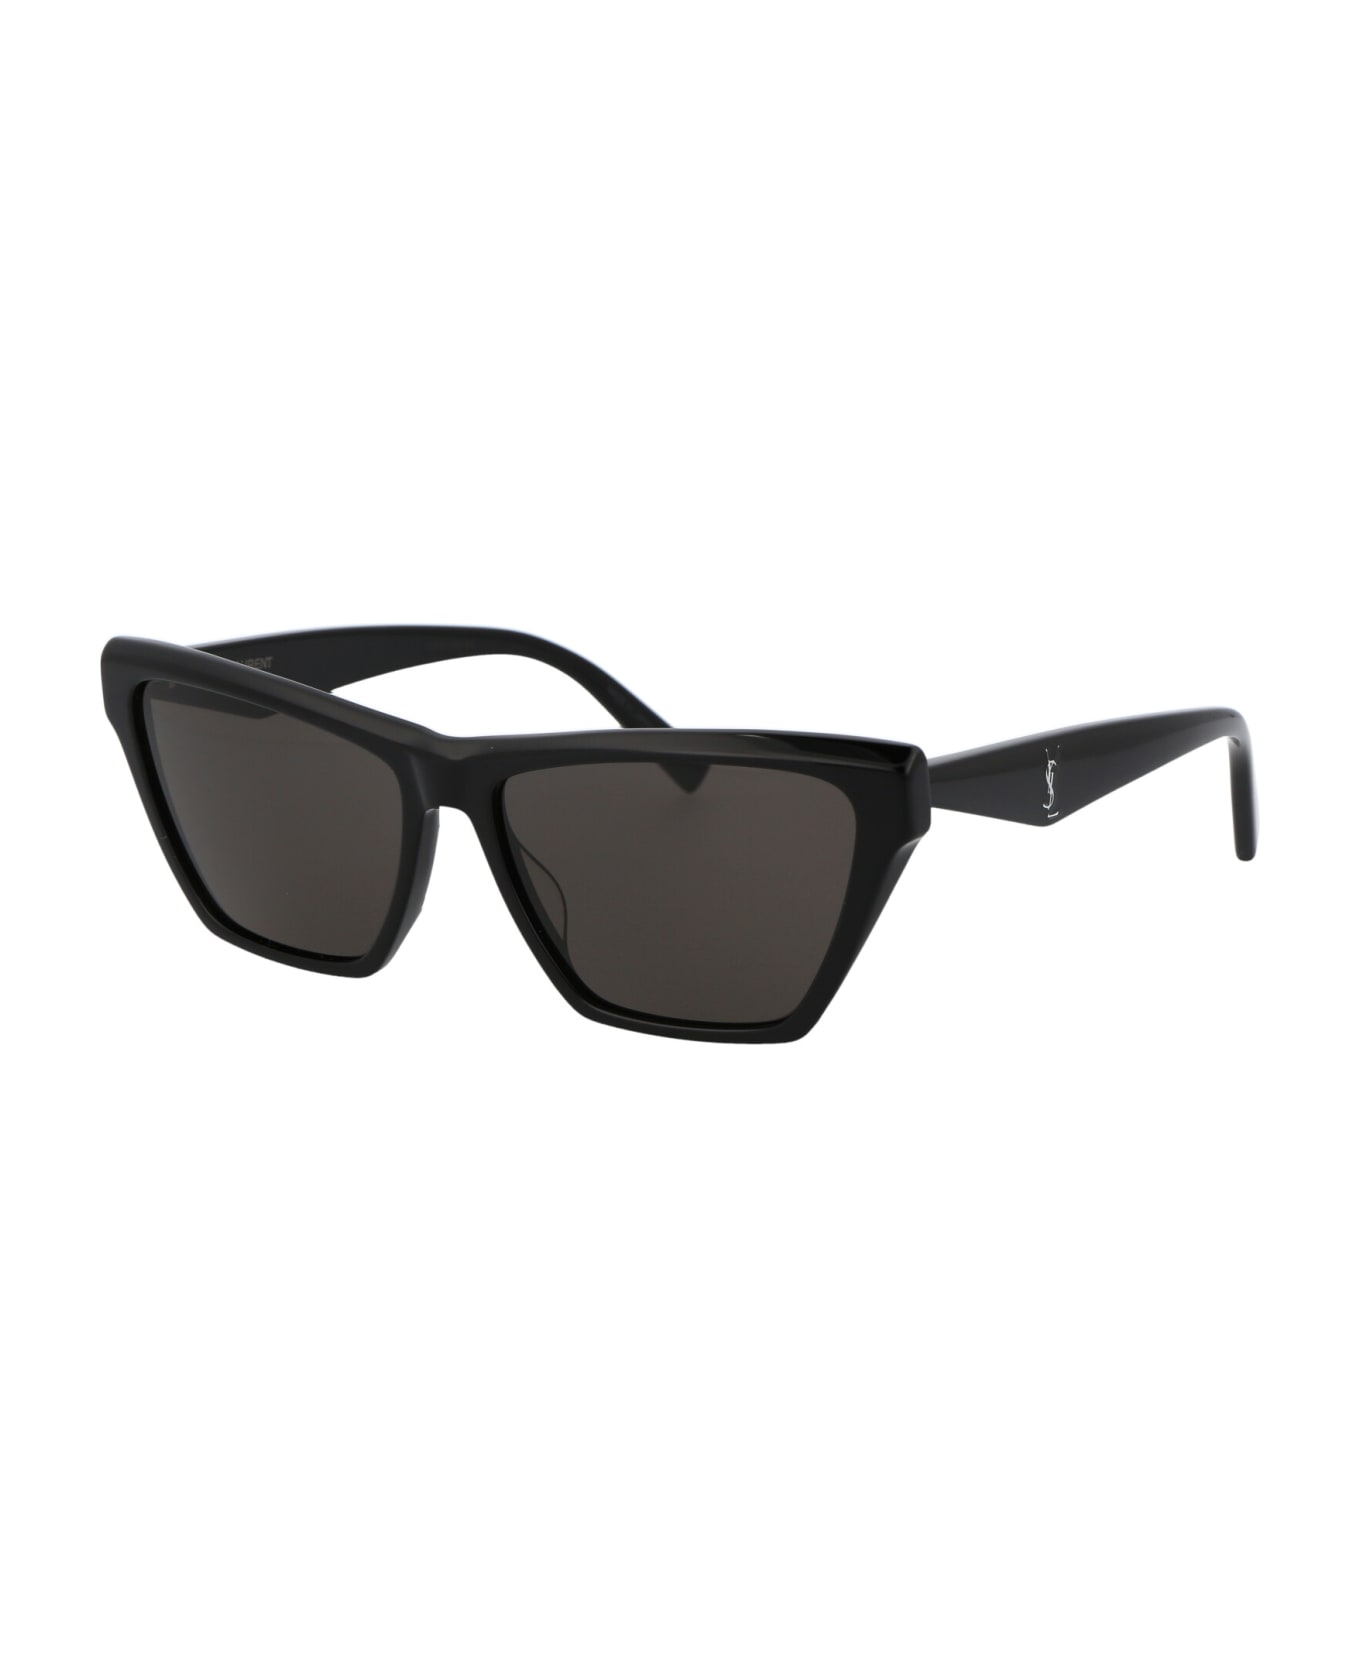 Saint Laurent Eyewear Sl M103 Sunglasses - 002 BLACK BLACK BLACK